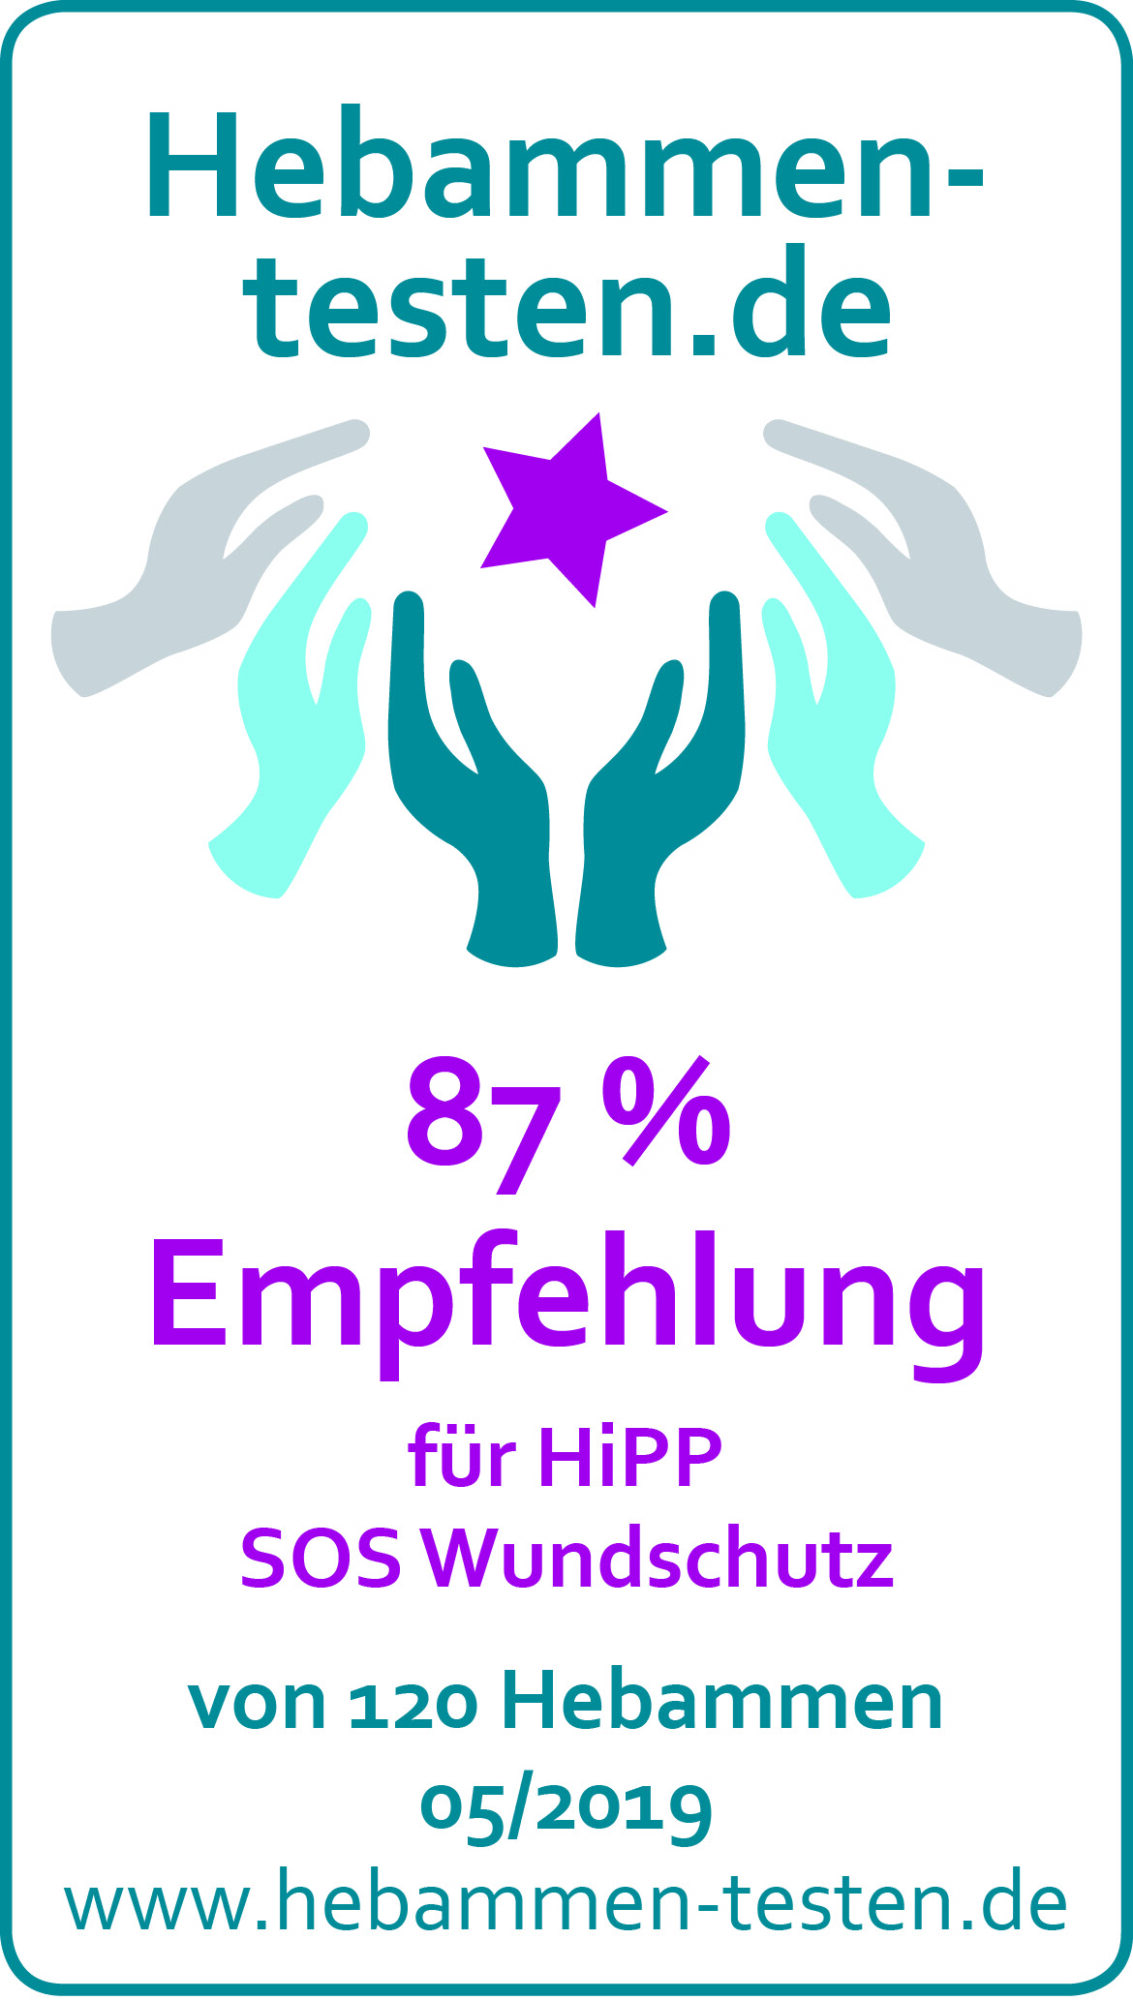 Hebammen-testen.de Siegel für HiPP SOS Wundschutz 87 % Empfehlung von 120 Hebammen im Mai 2019 getestet.